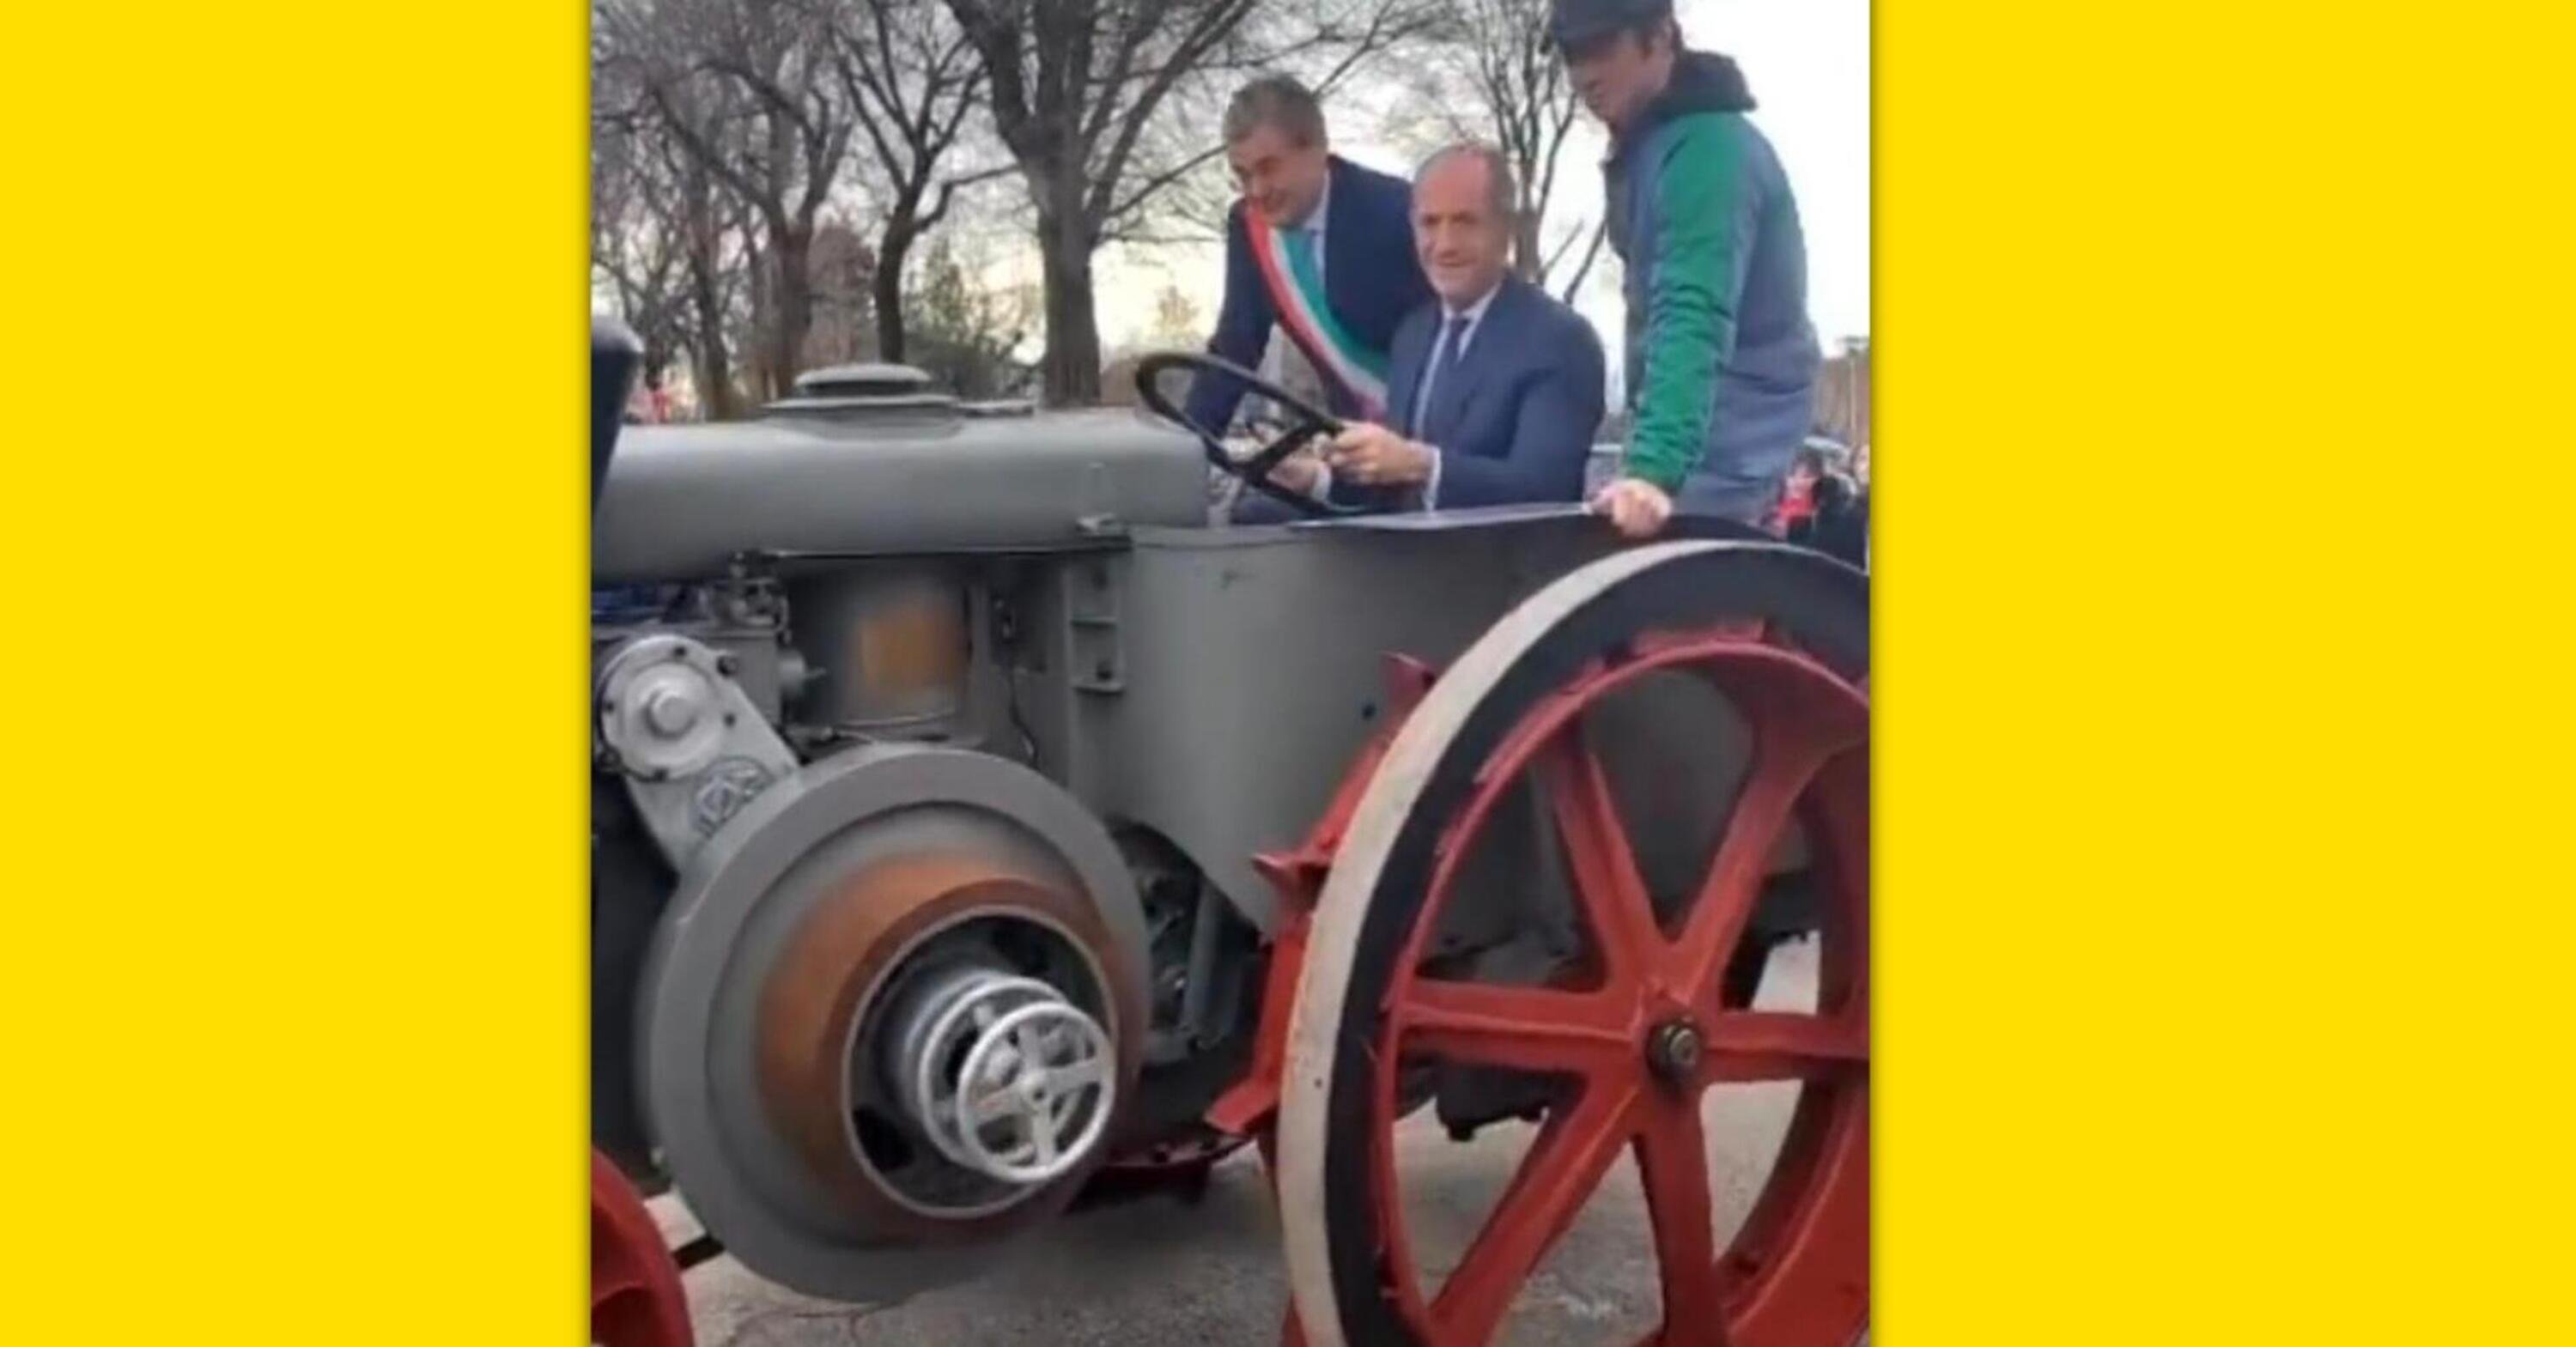 Veneto: Luca Zaia guida un trattore Super Landini a testa calda: come funziona? [VIDEO]